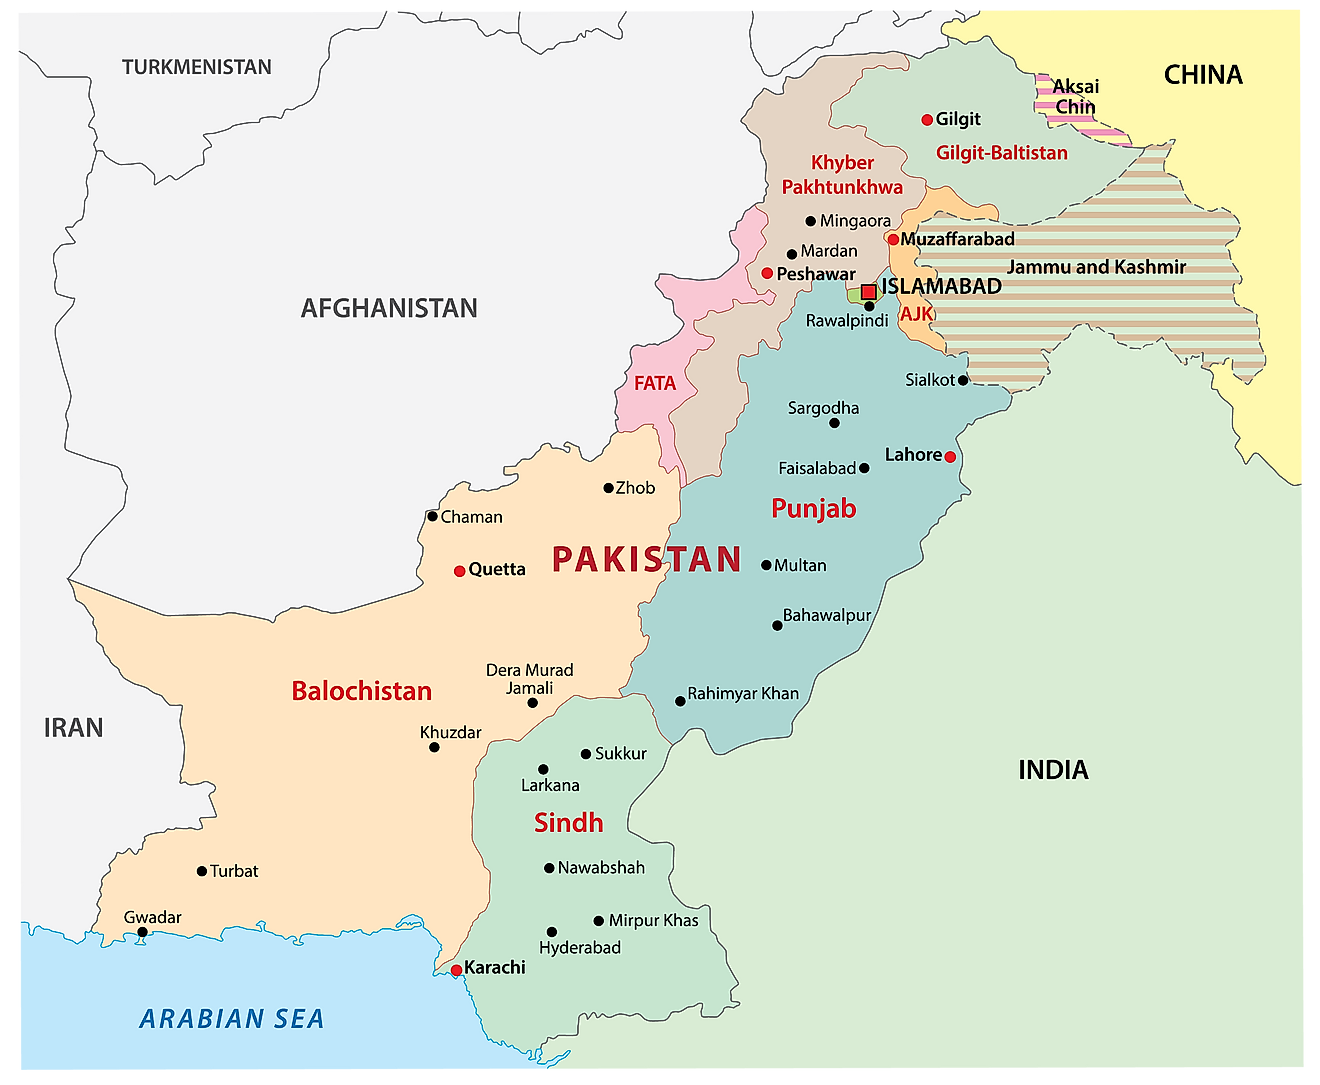 Mapa político de Pakistán que muestra las principales divisiones administrativas y la ciudad capital de Islamabad.